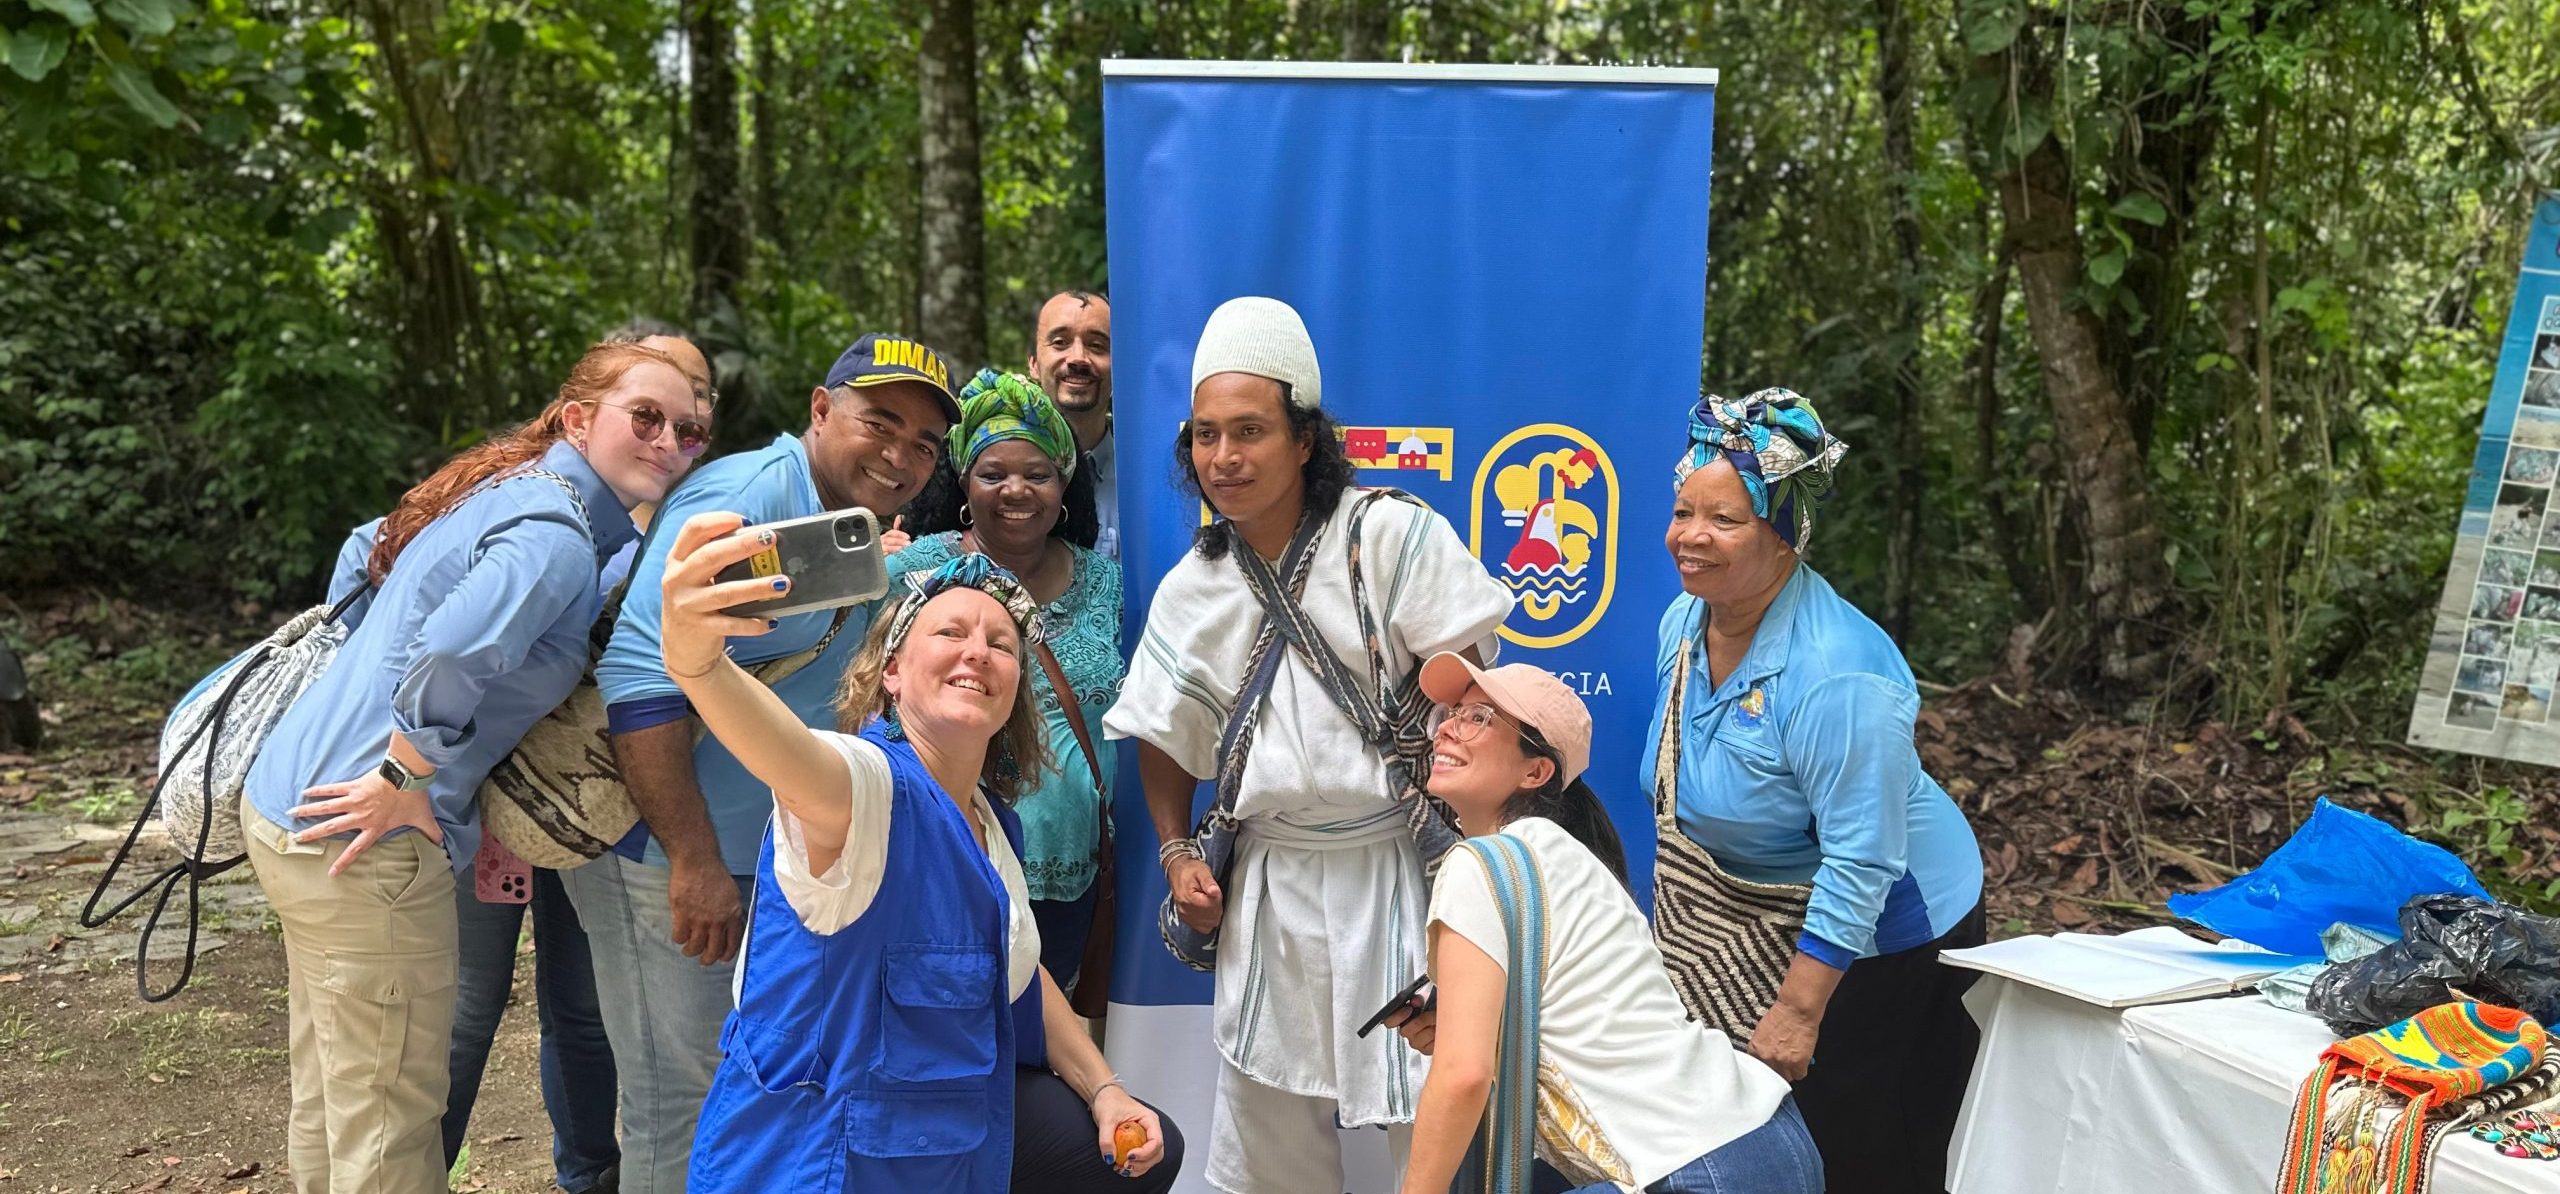 Parques Nacionales Naturales y la Embajada de Suecia en Colombia realizaron segunda Caminata por los Parques en el Parque Nacional Natural Tayrona